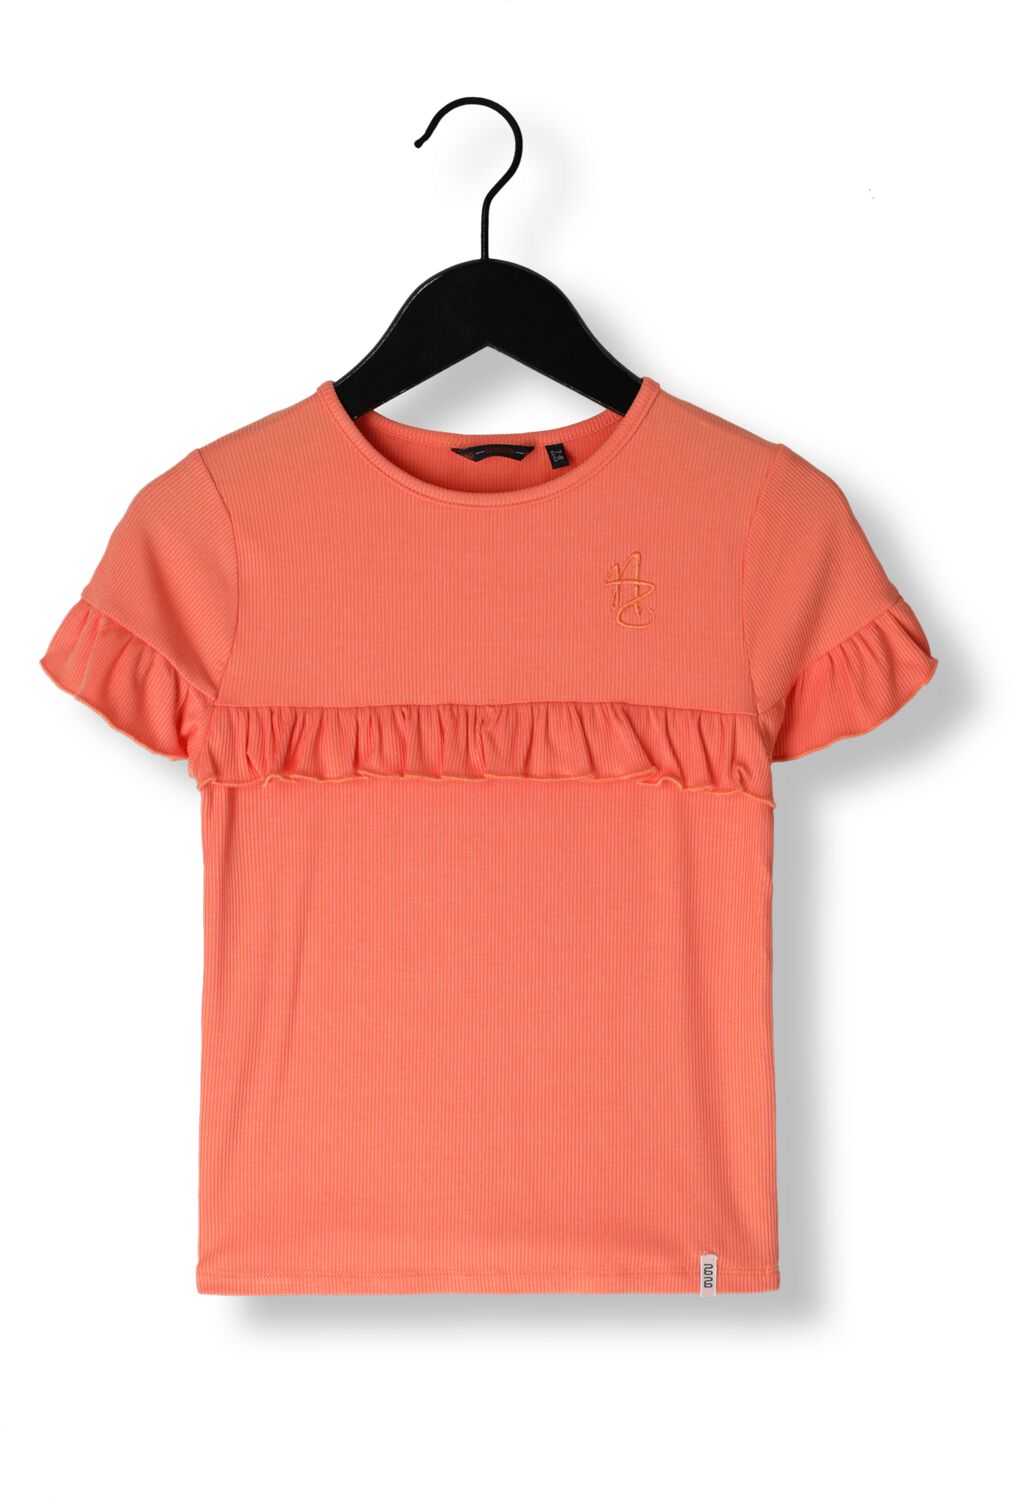 NONO Meisjes Tops & T-shirts Kovan Rib Jersey T-shirt Ruffles Koraal